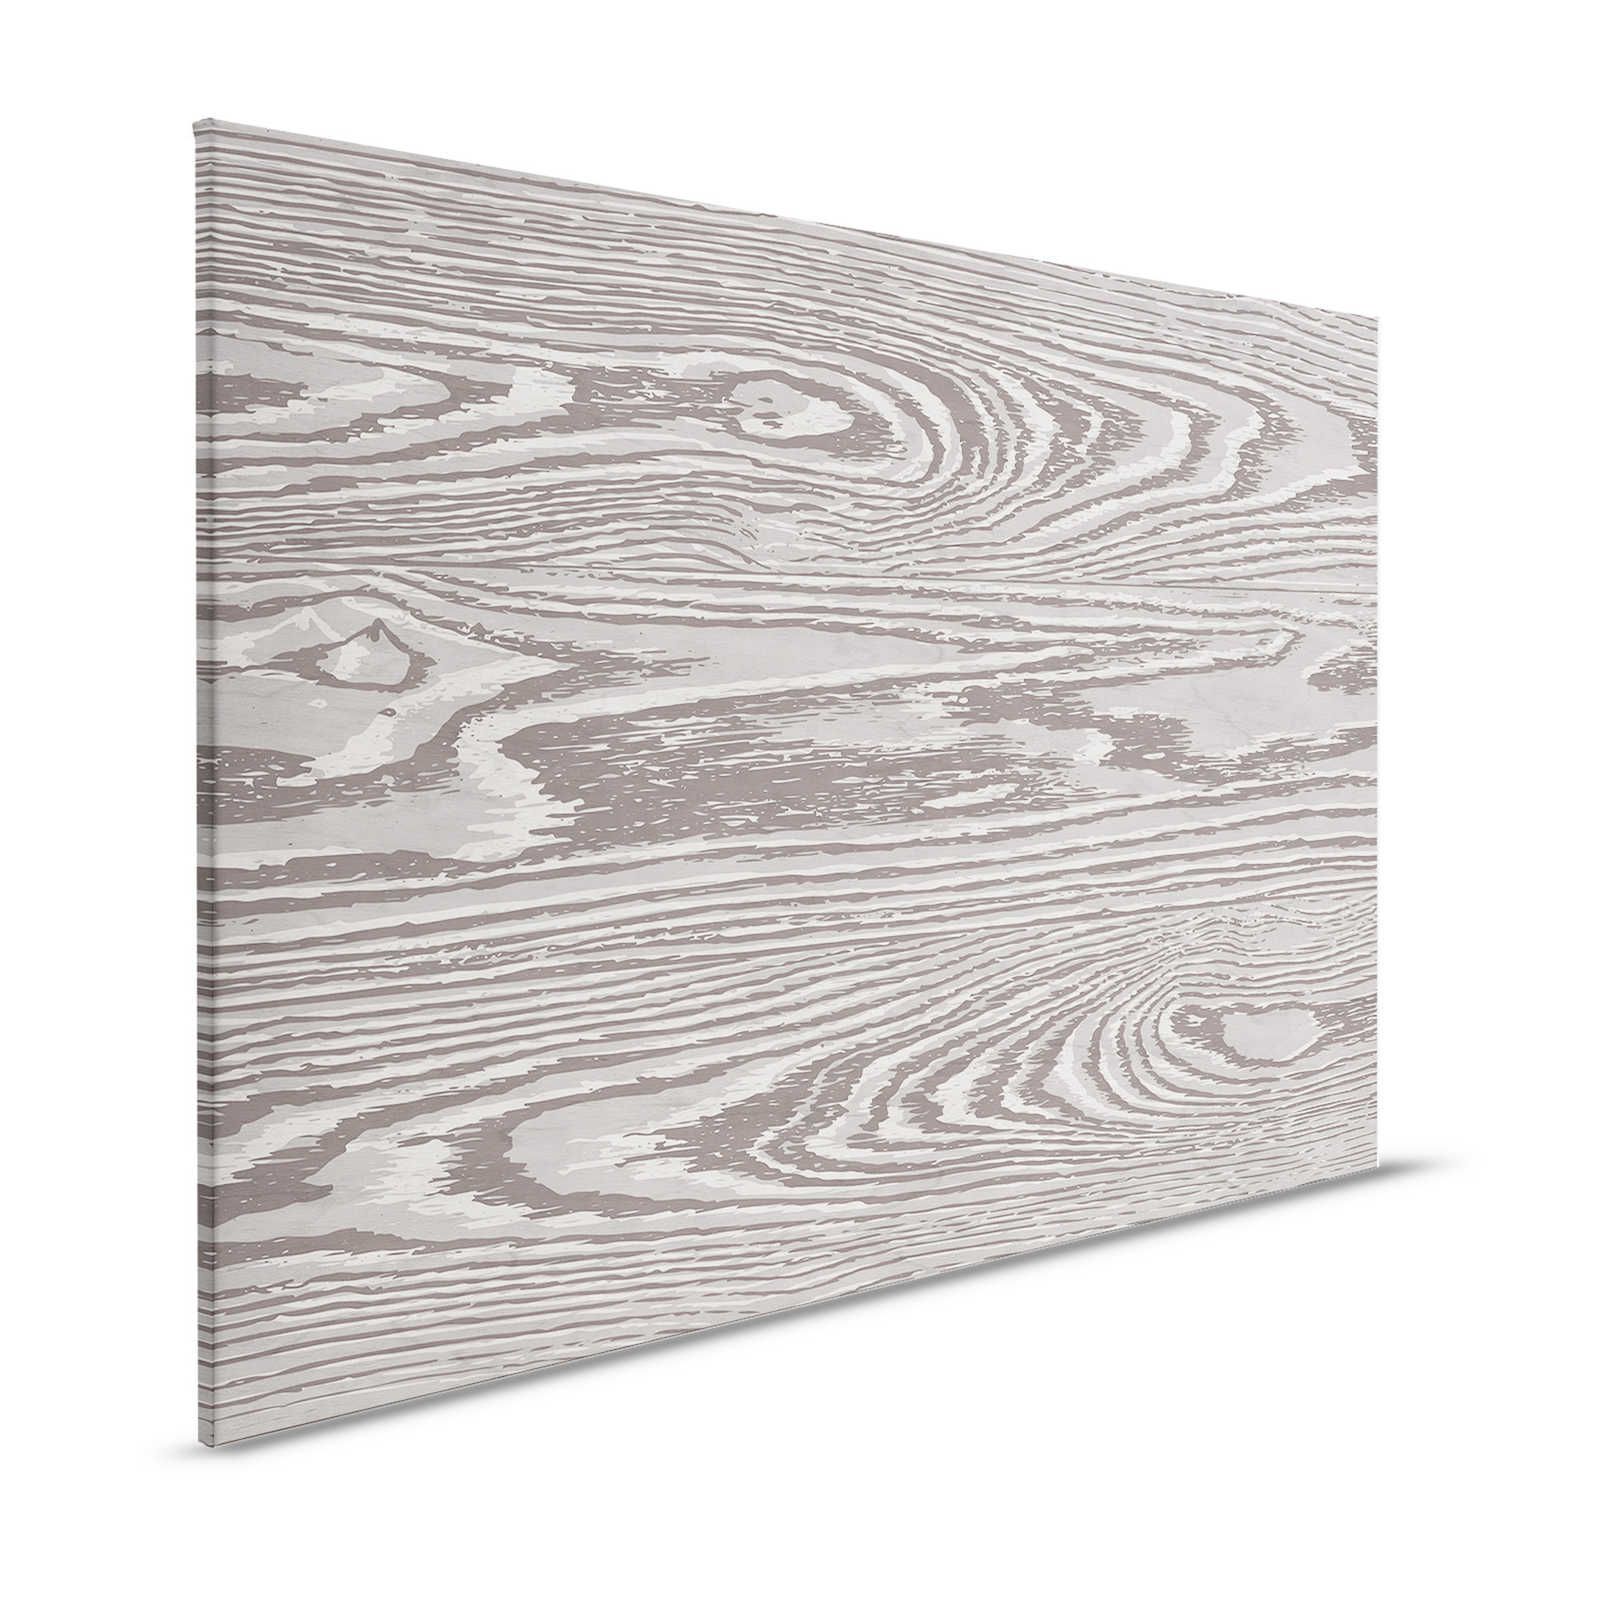 Bounty 4 - Pittura su tela effetto legno Grain XXL in marrone e grigio - 1,20 m x 0,80 m
